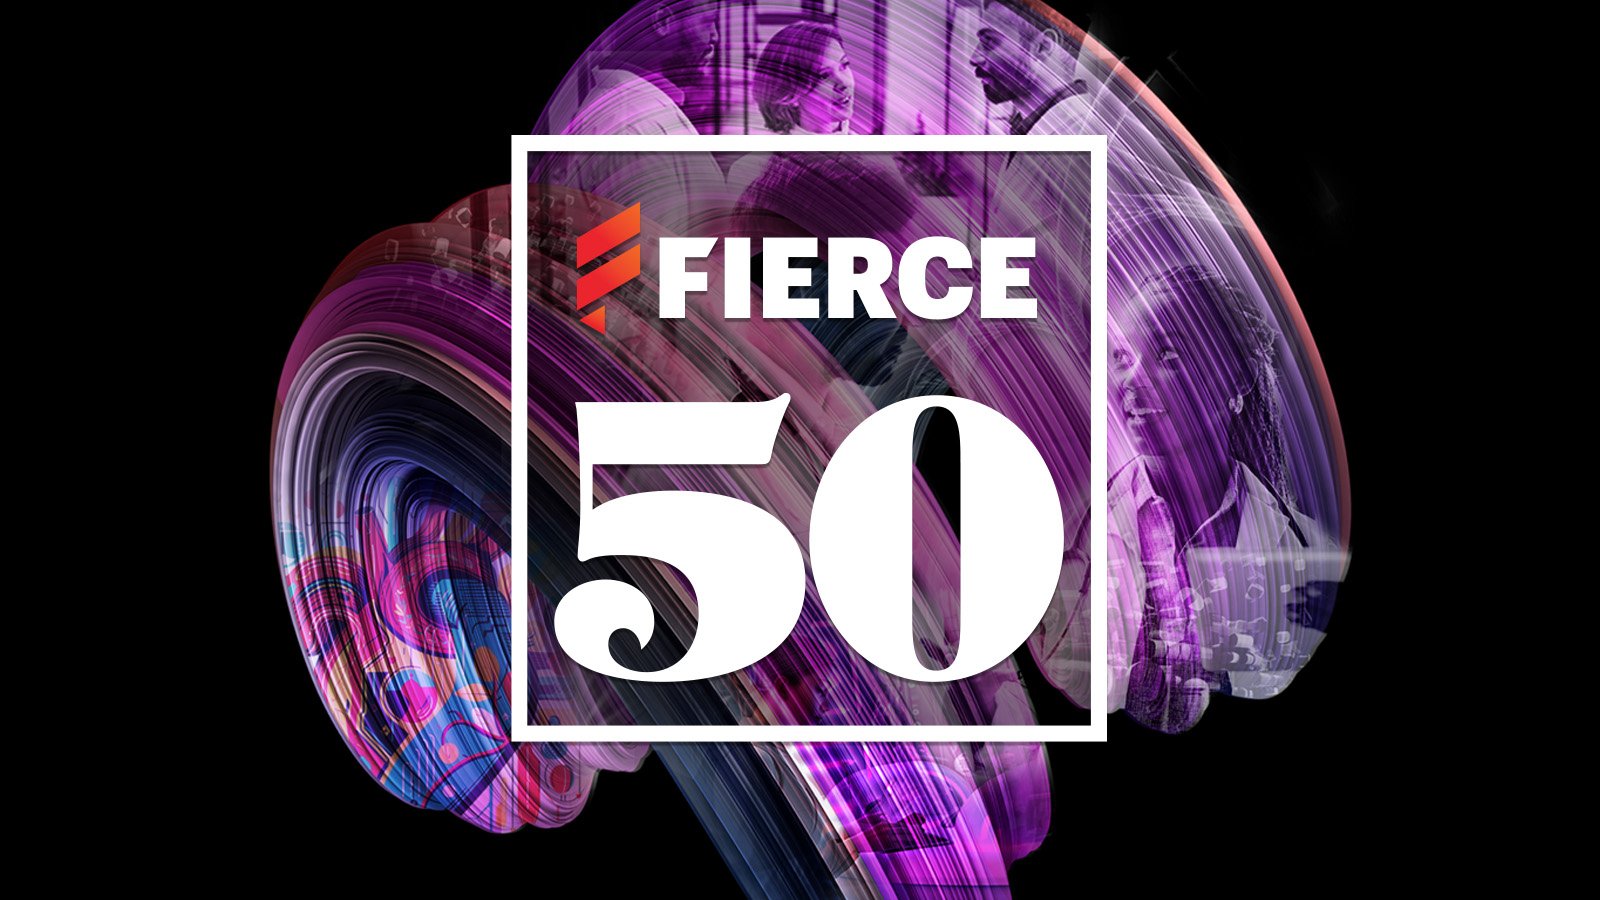 Fierce 50